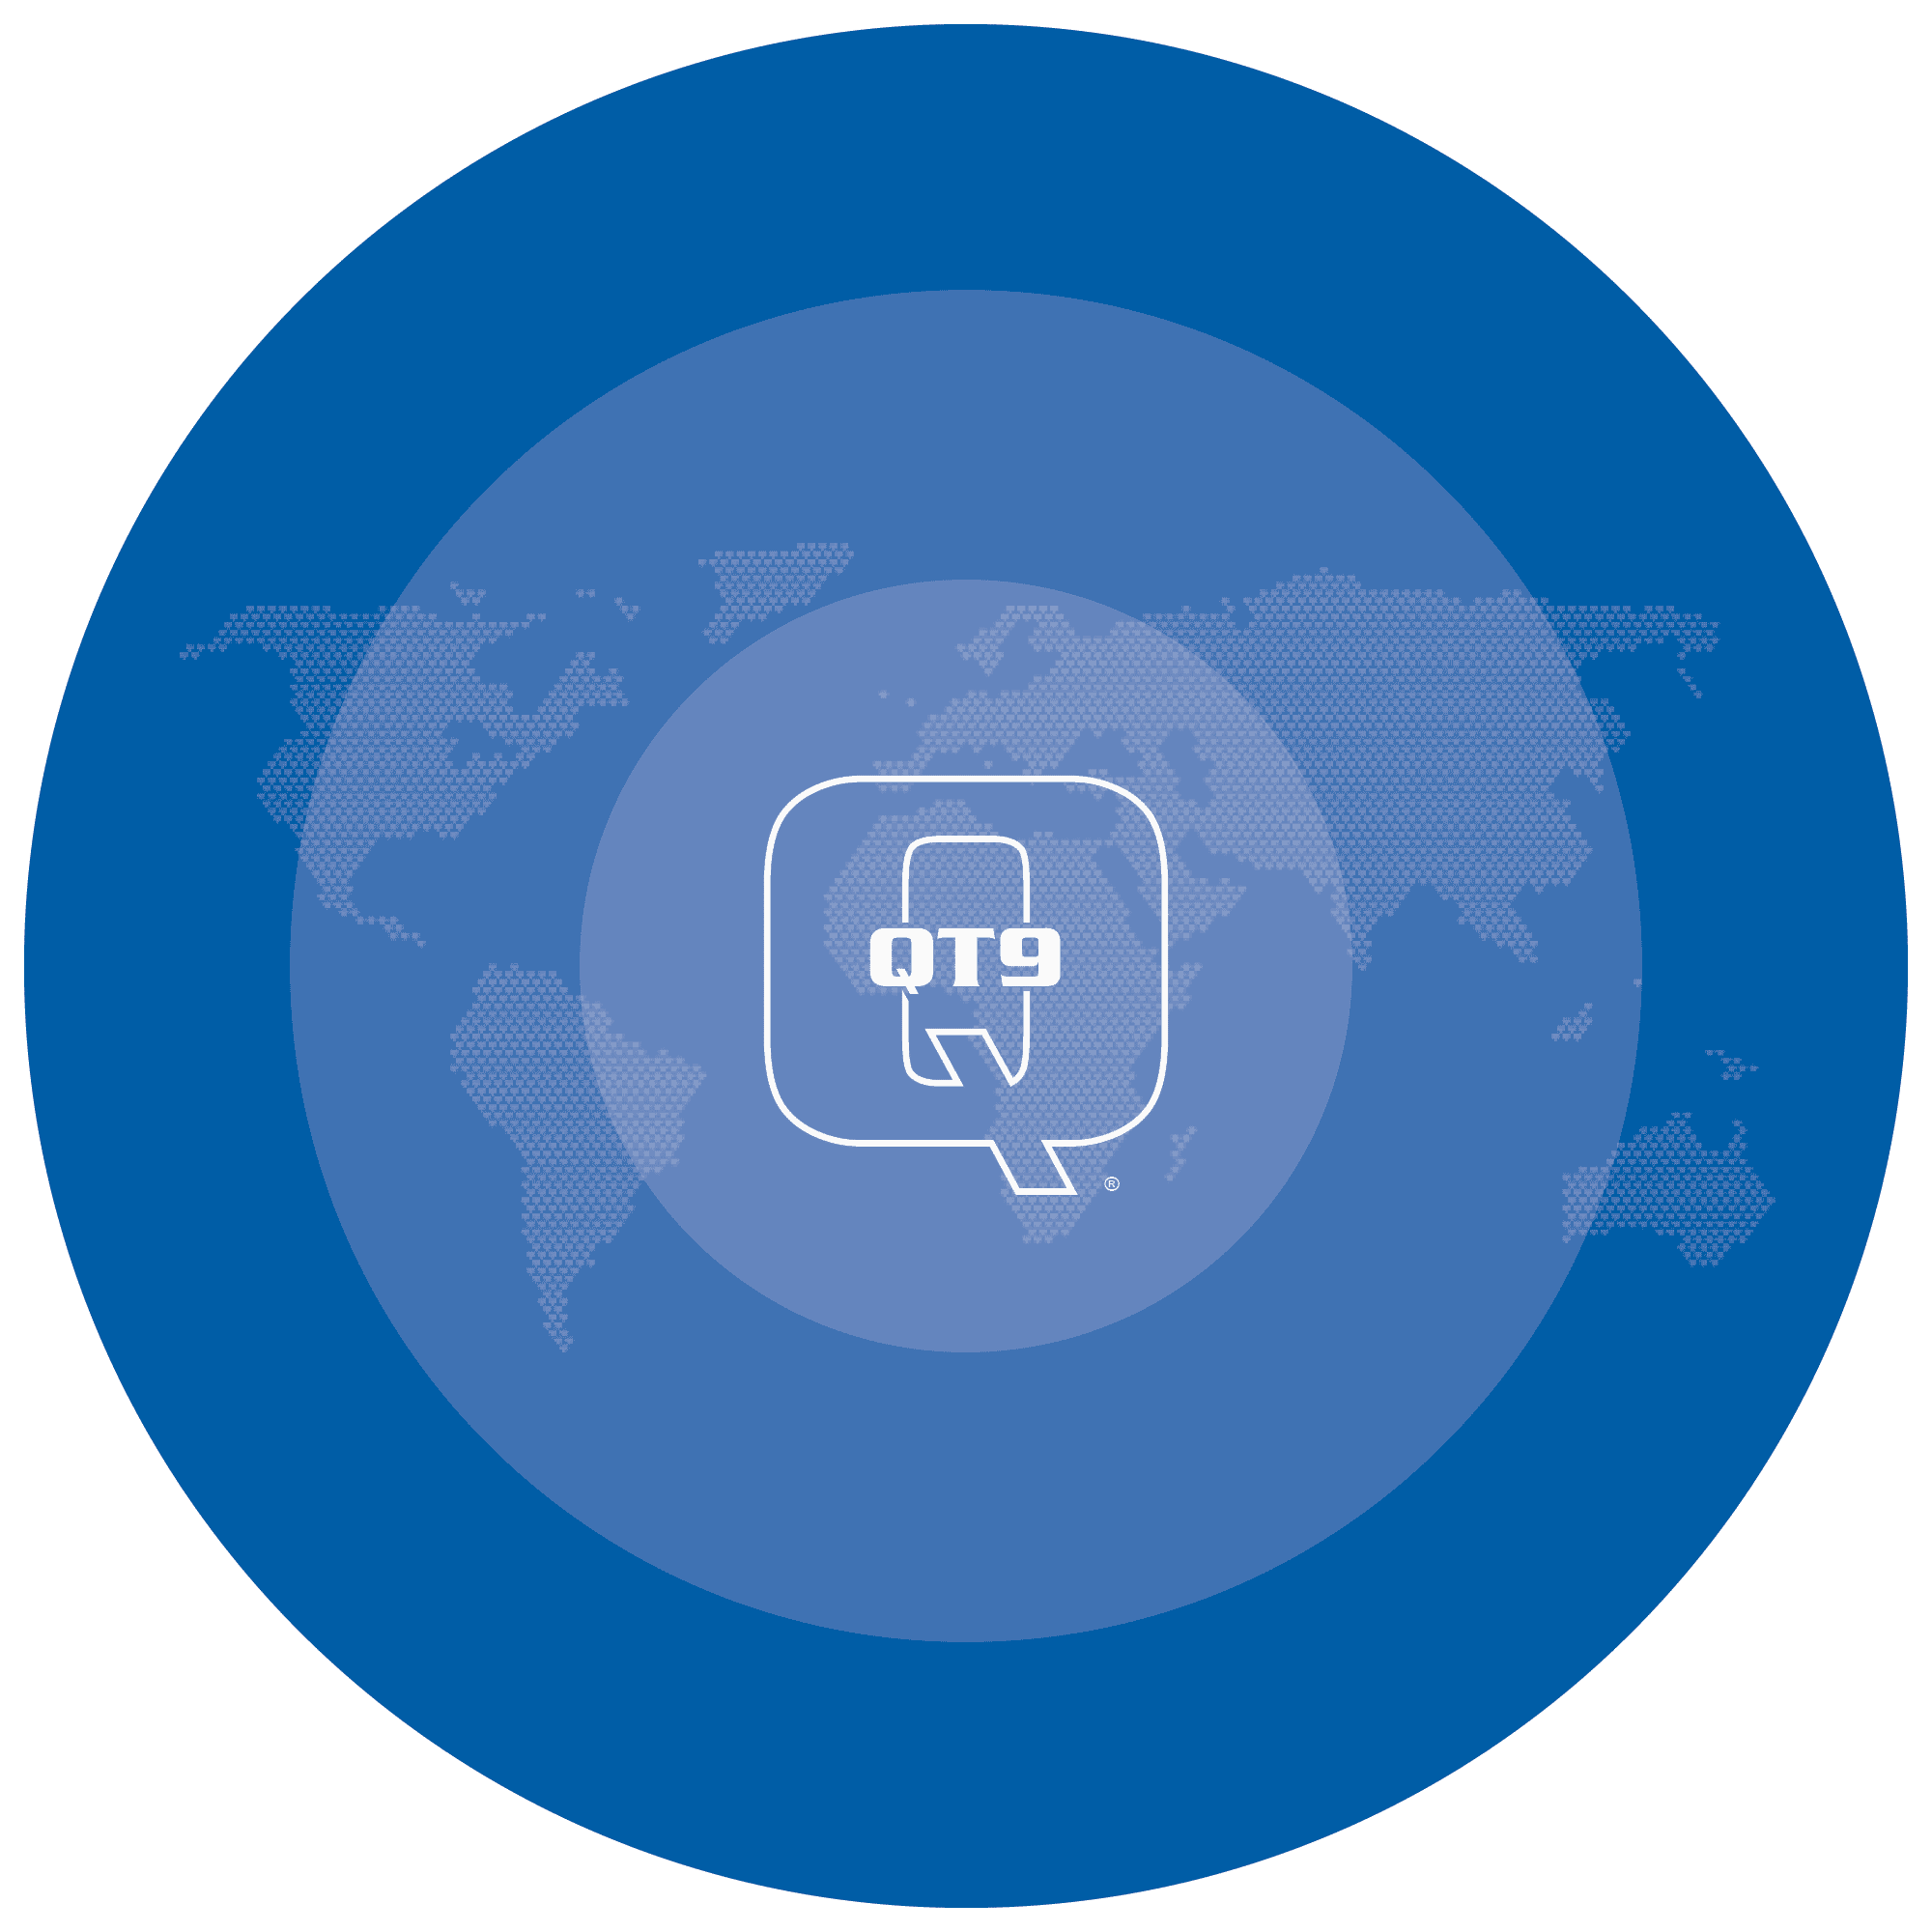 QT9 Software